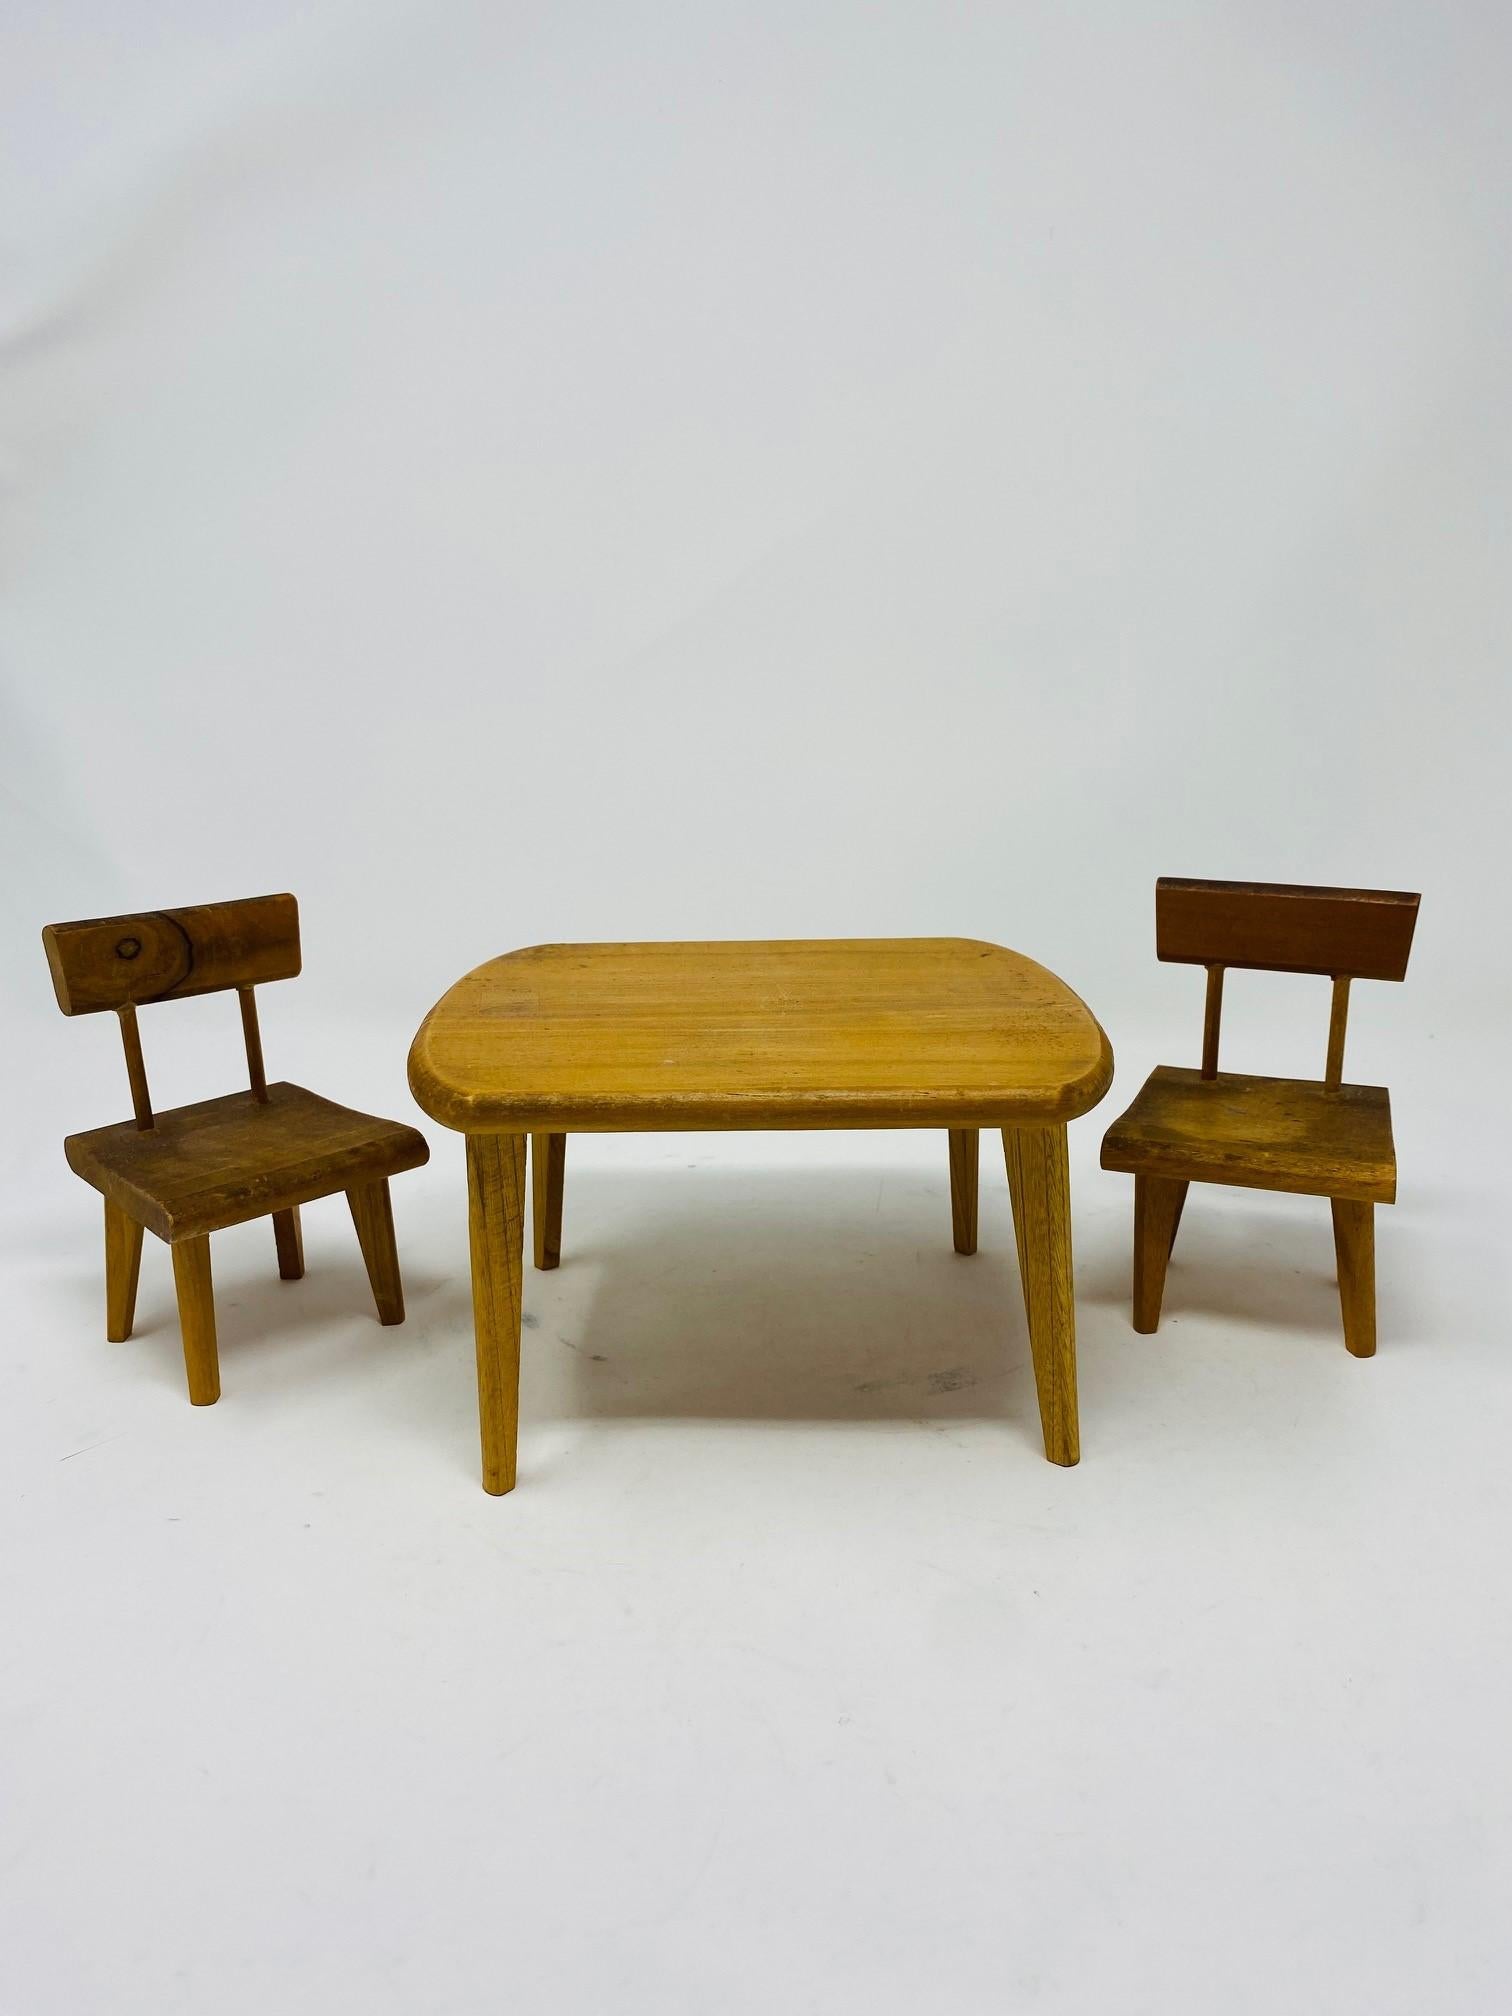 Gruppe von Miniatur-Holzmöbeln im Stil der Jahrhundertmitte, bestehend aus einem Tisch und zwei Stühlen.  Dieses Vintage-Set wurde in den frühen 1960er Jahren von Hand gefertigt.  Ideal für Dekoration oder Modelle.  Tabelle ist 4,1